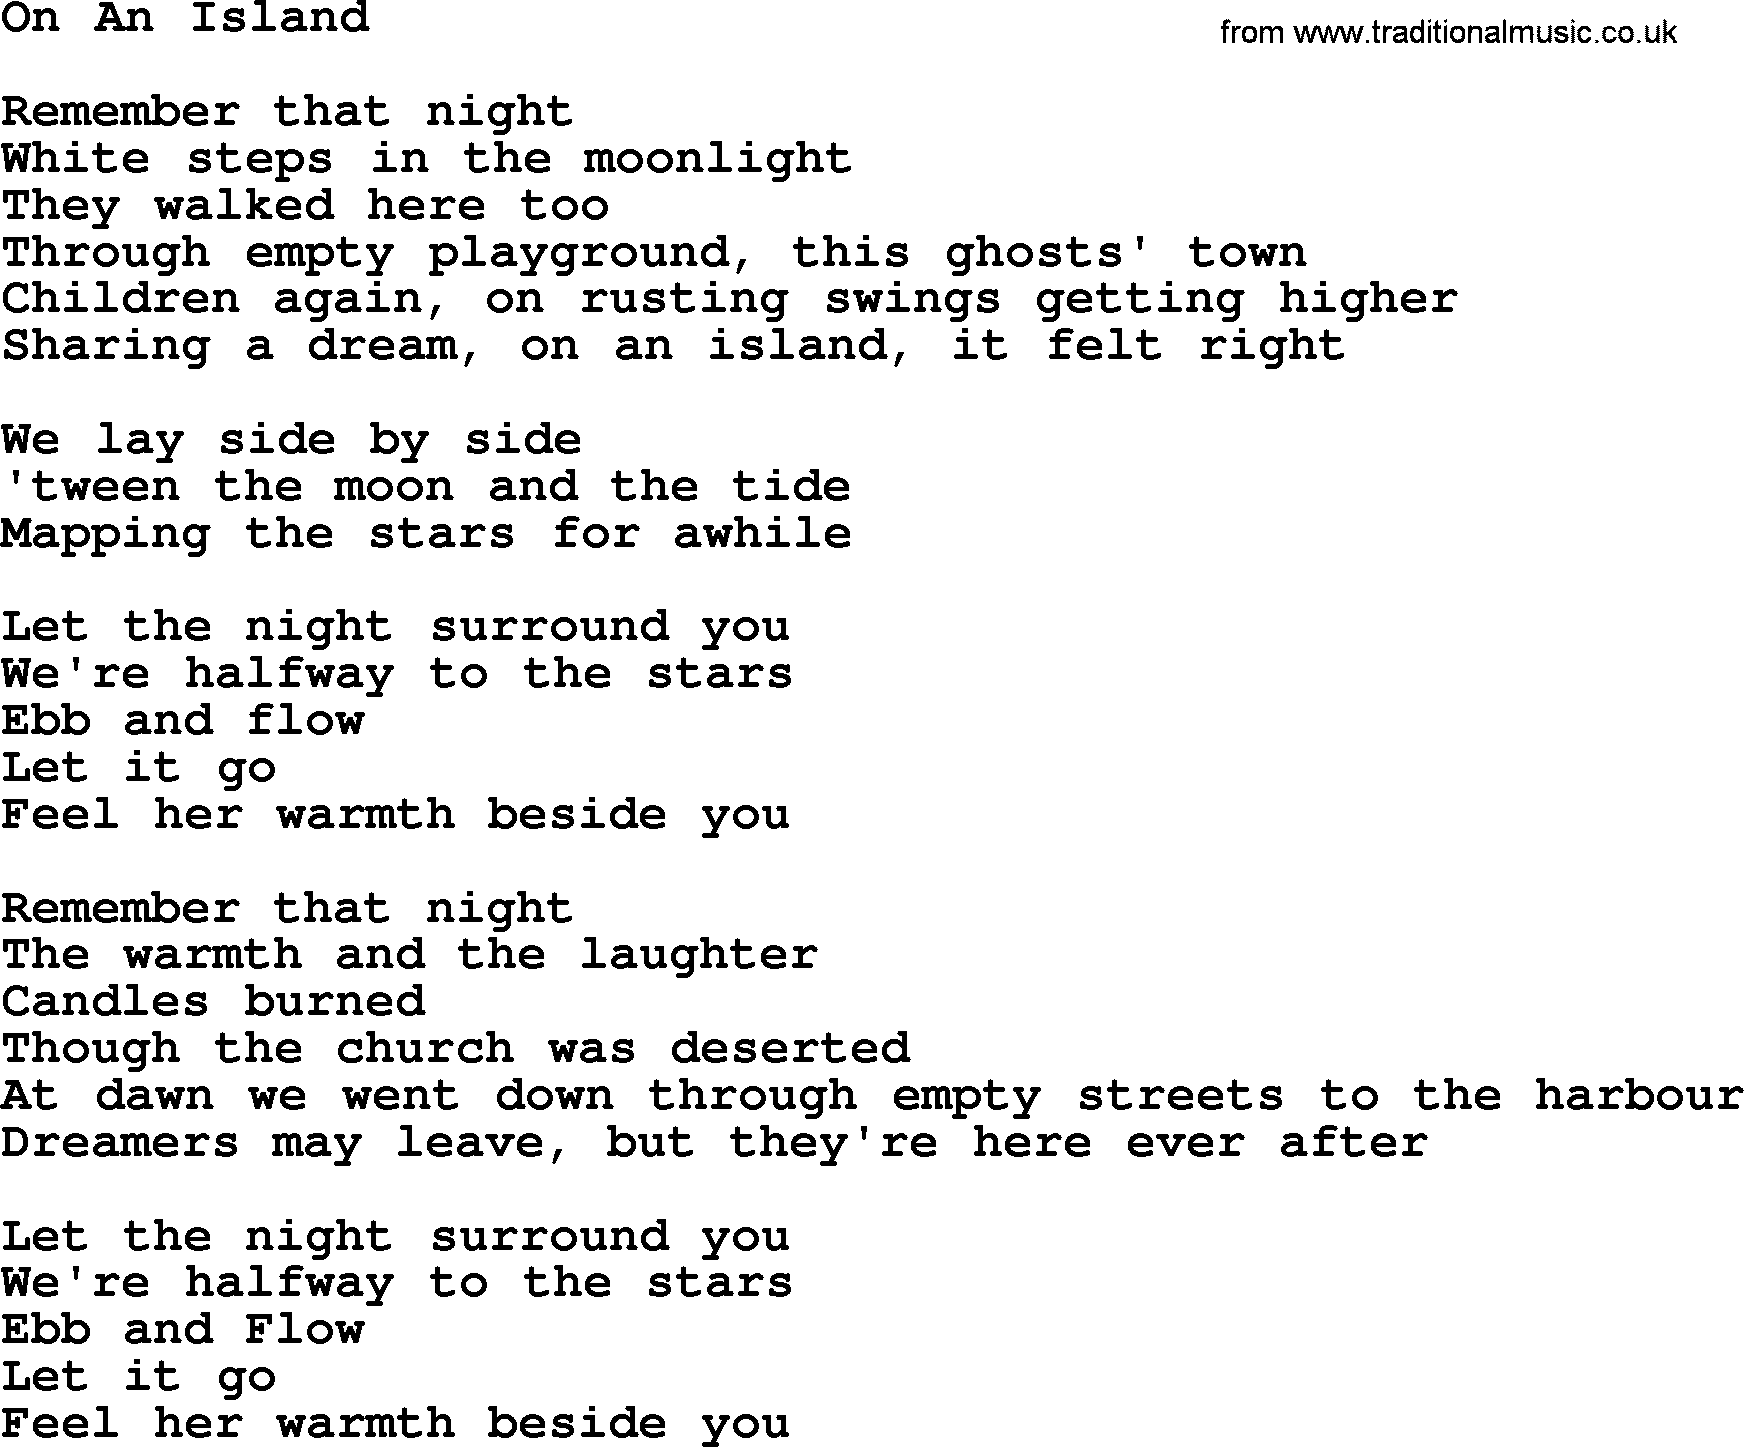 The Byrds song On An Island, lyrics